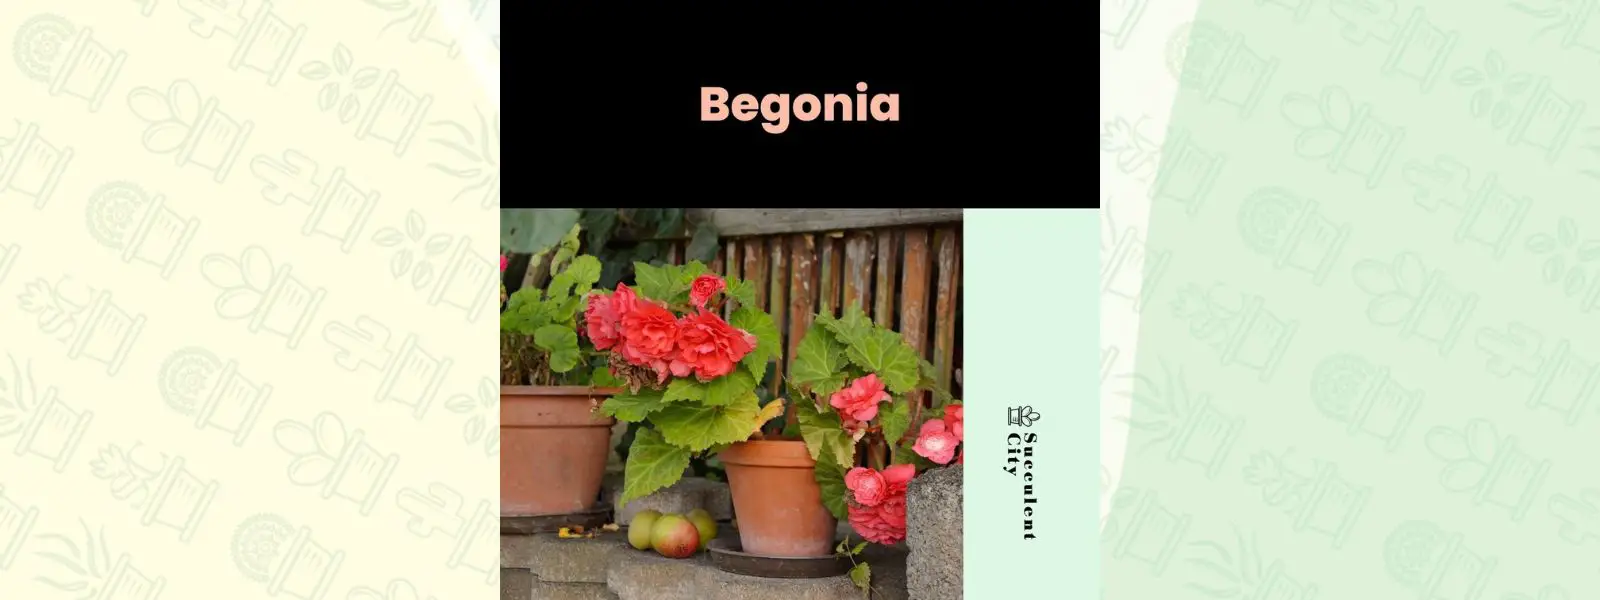 Género “Begonia”.